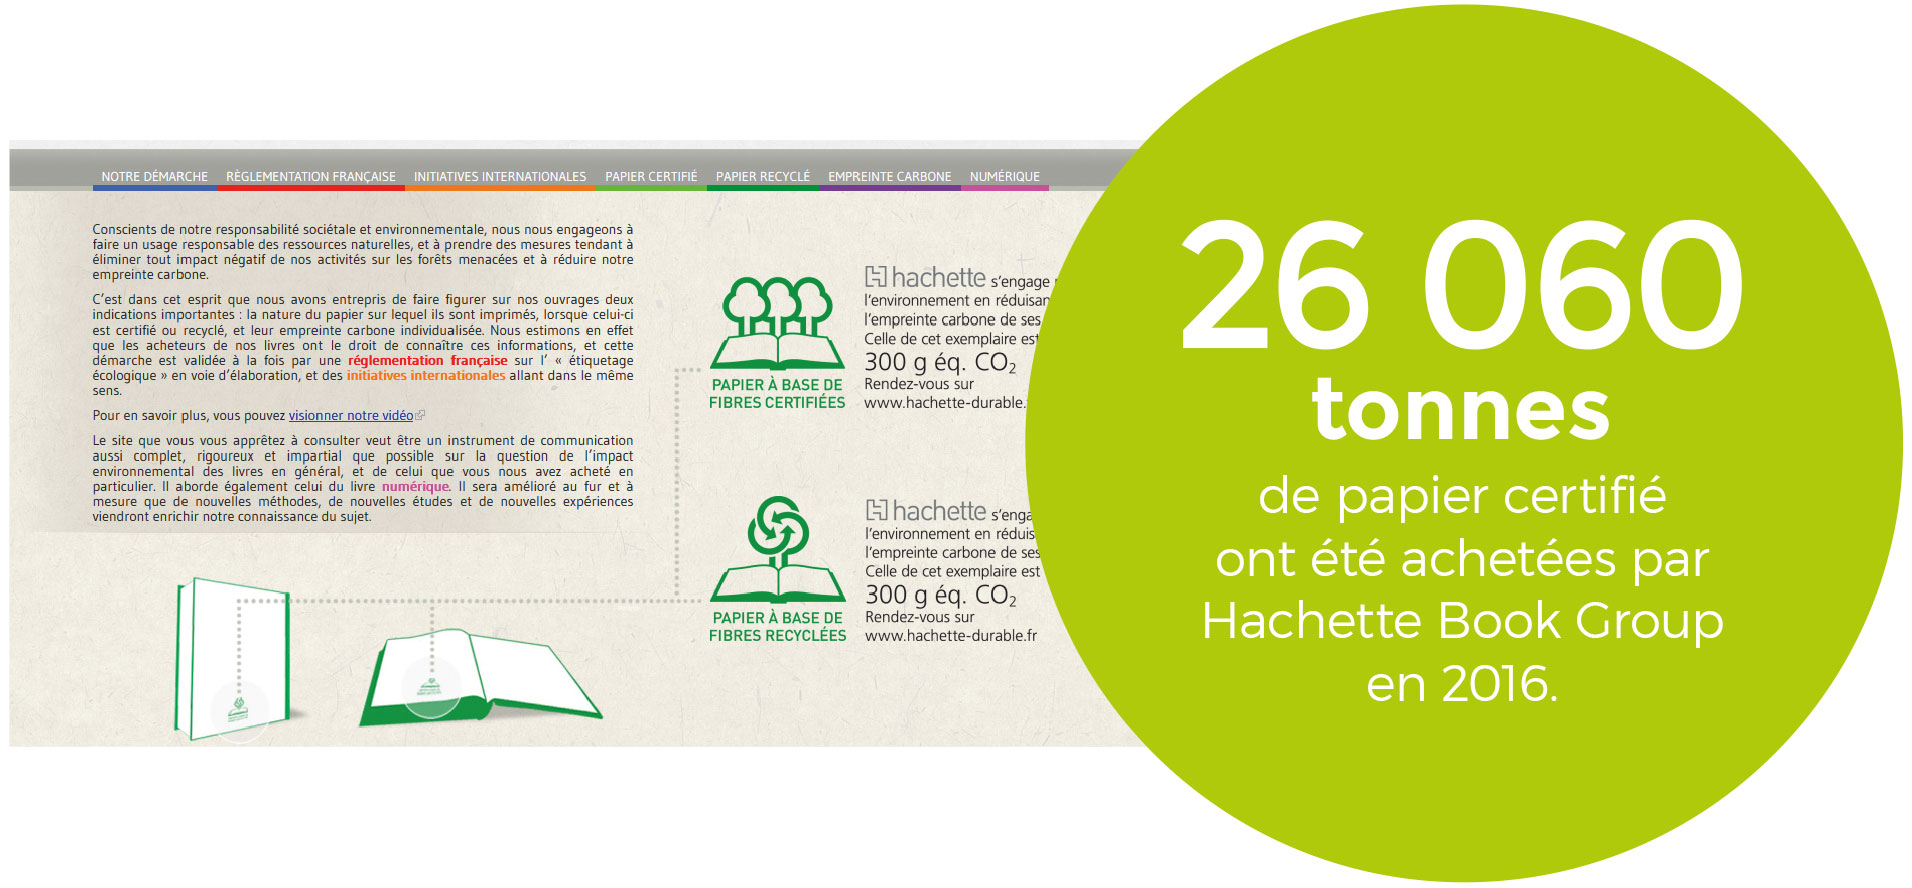 Site Internet Hachette-durable.fr dédié aux enjeuxenvironnementaux du papier